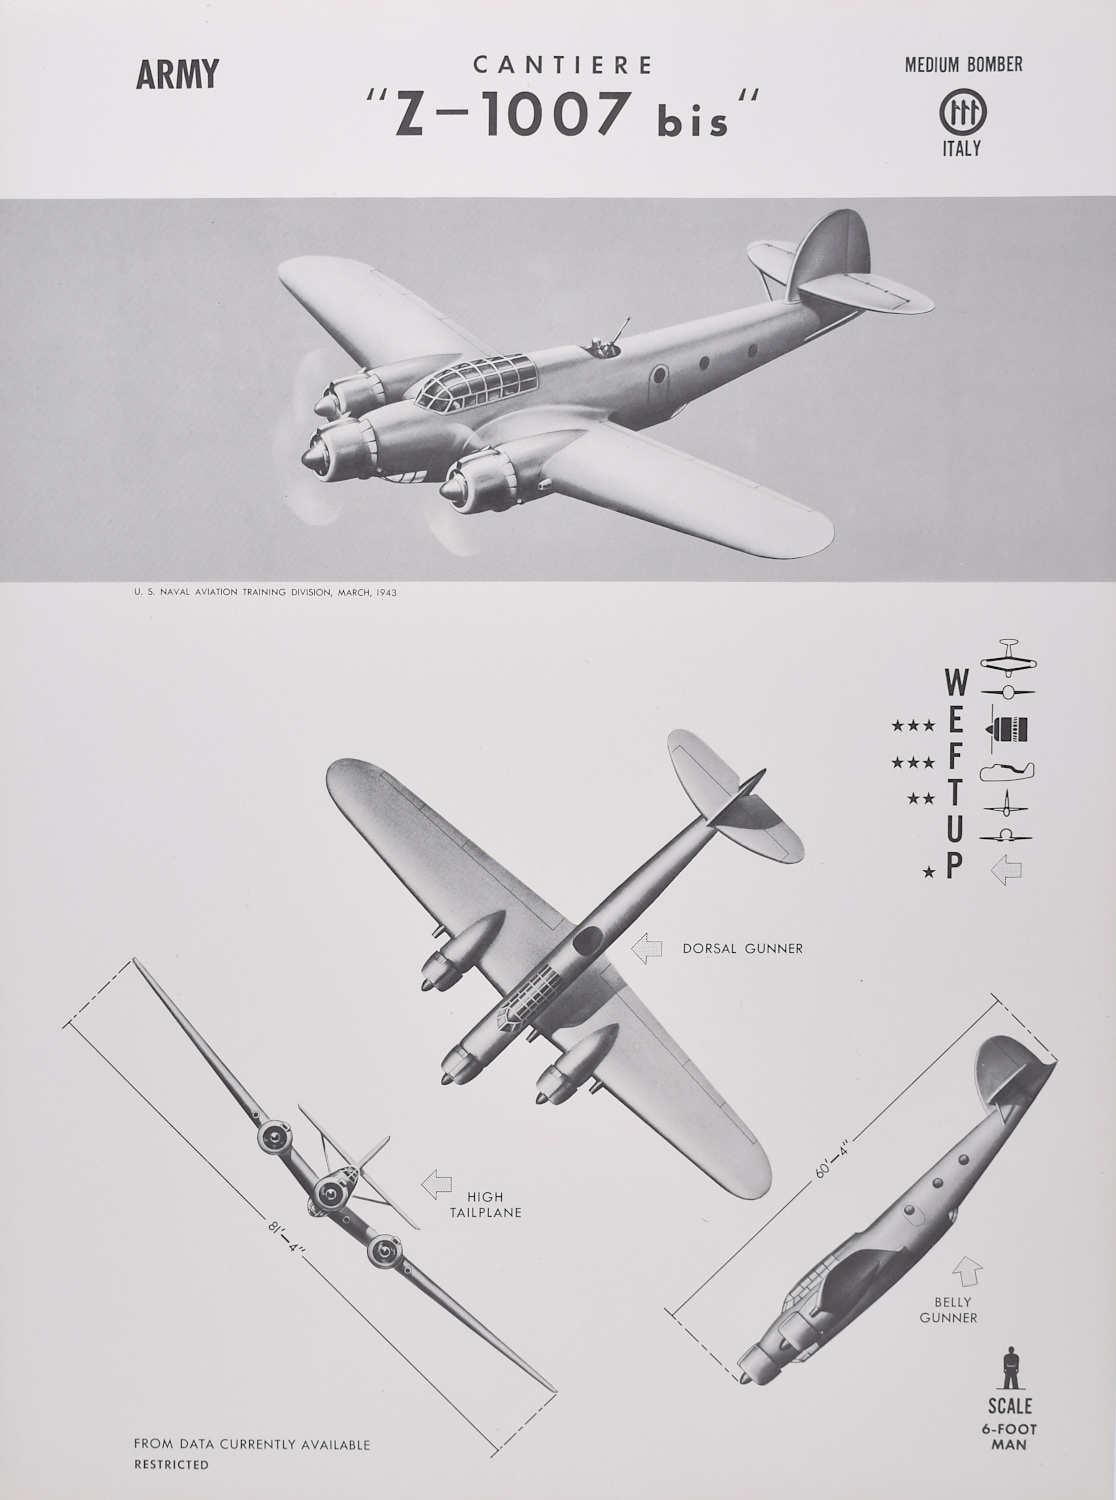 Affiche d'identification d'avions bombardiers de taille moyenne italienne « Z-1007 bis » de 1943 de Cantiere, Seconde Guerre mondiale - Print de Unknown